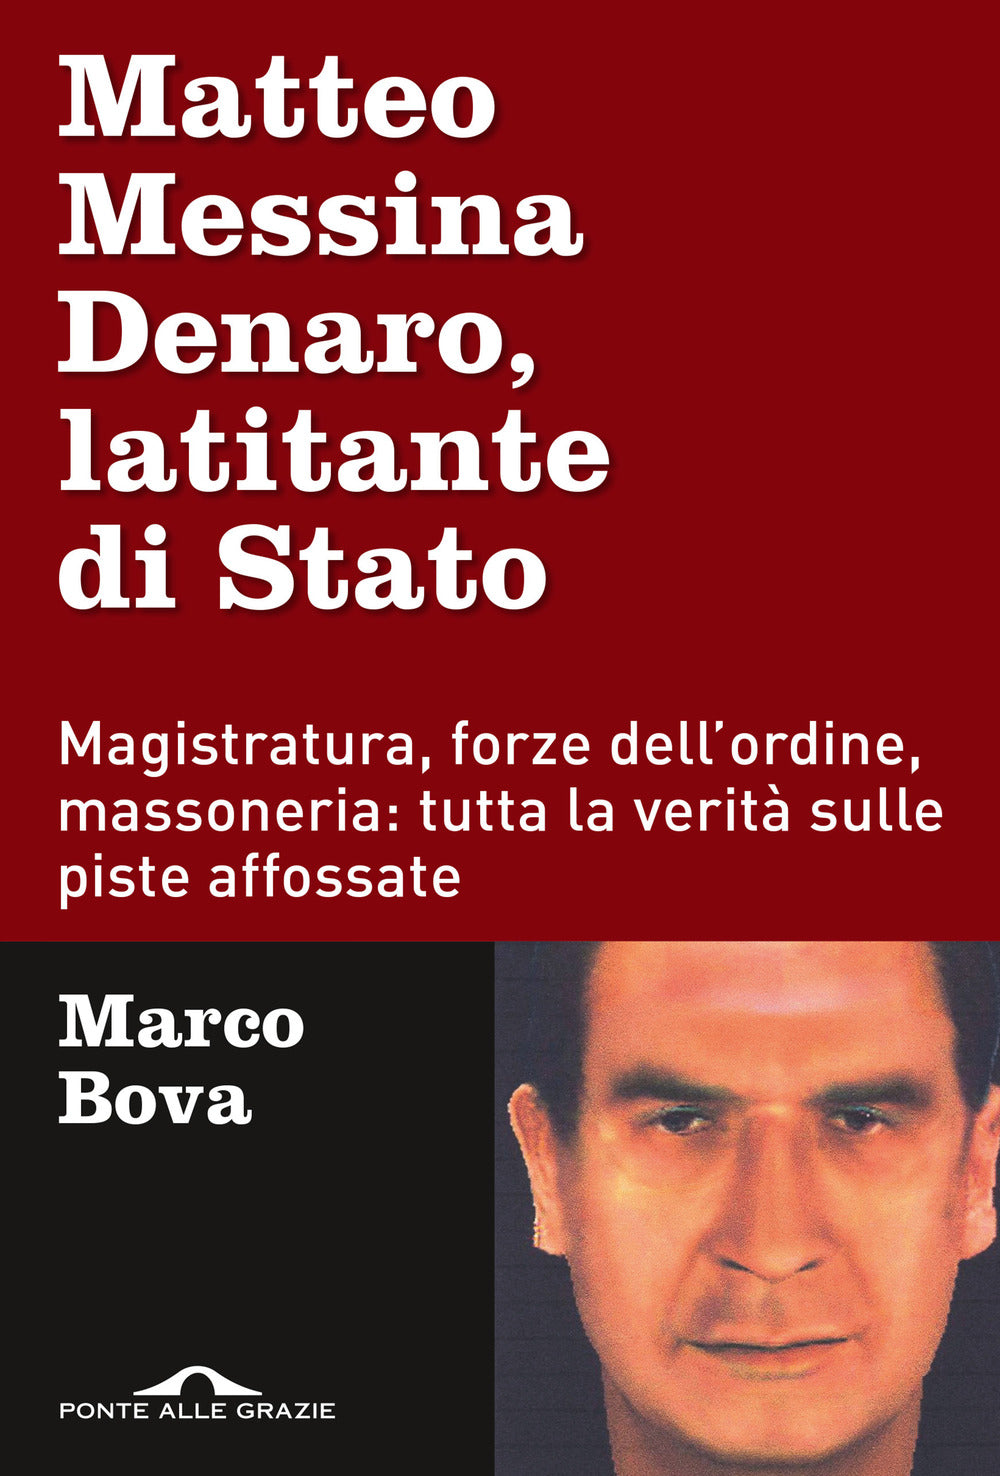 Matteo Messina Denaro, latitante di Stato. Magistratura, forze dell'ordine, massoneria: tutta la verità sulle piste affossate.